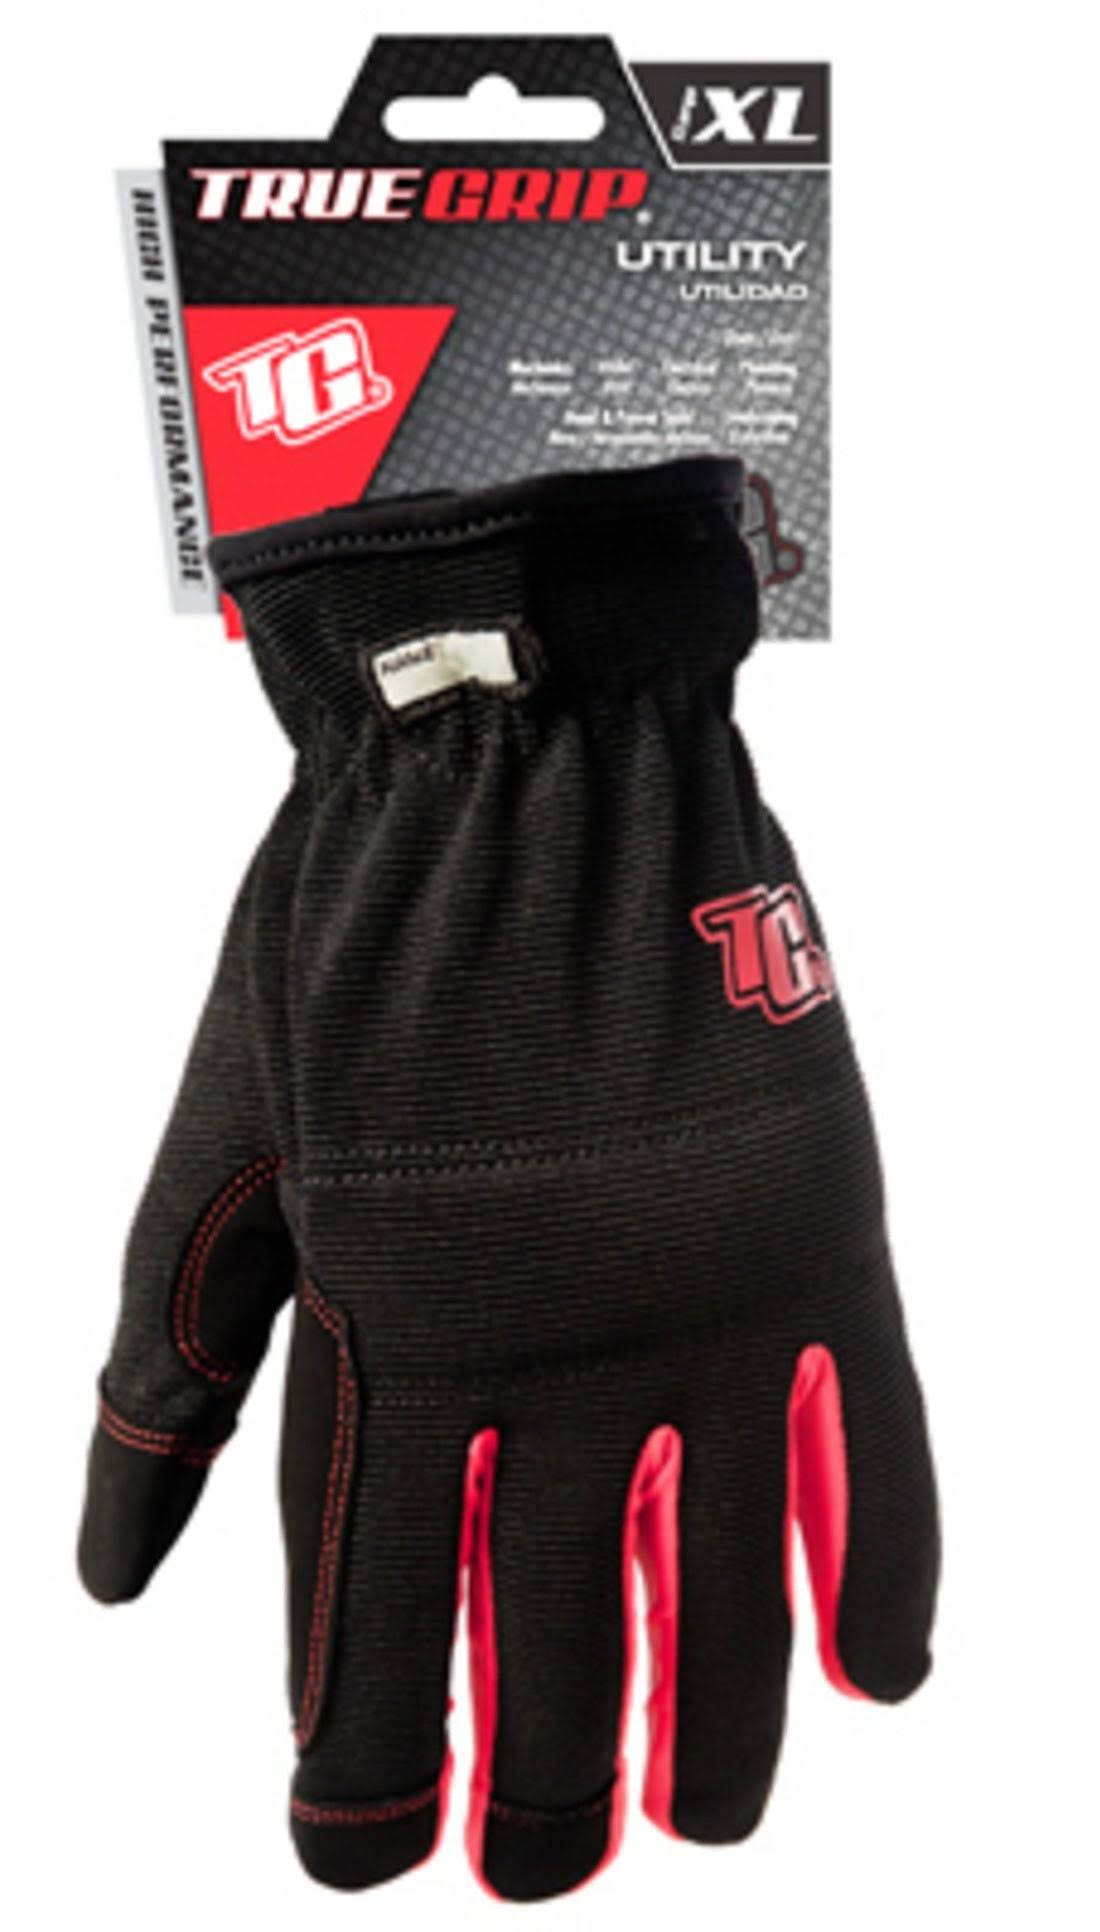 True Grip 90083-23 High Performance Utility Work Glove, XL, Black/Red